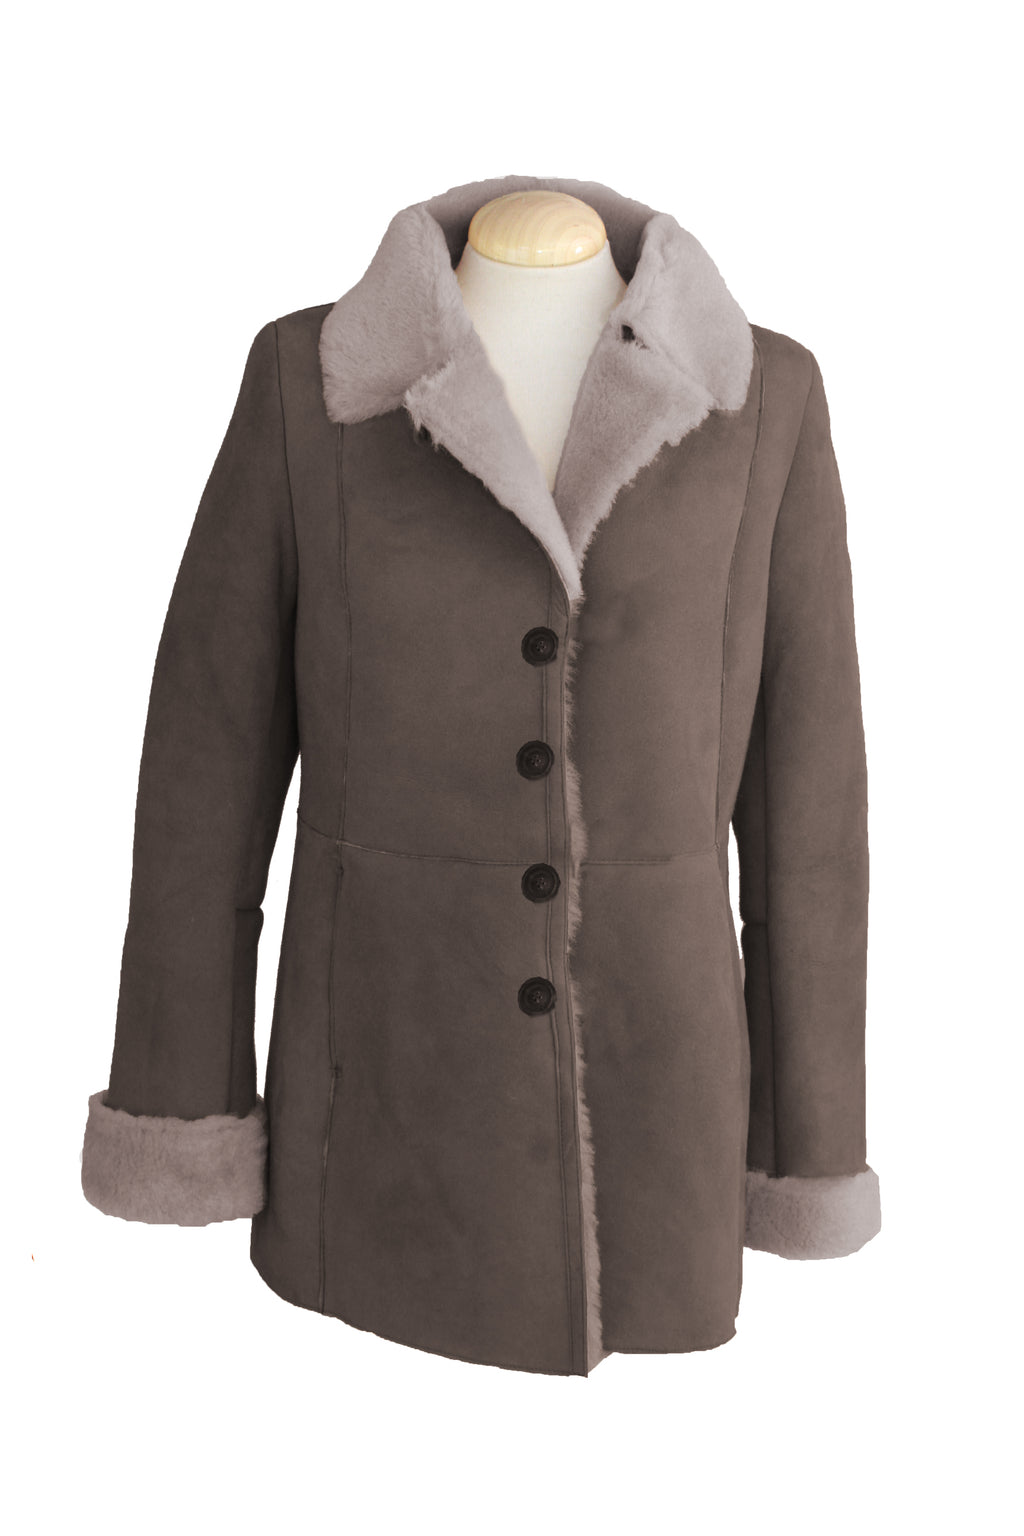 Women's Button Fastening Suede Leather Sheepskin Jacket in Vizon Grey